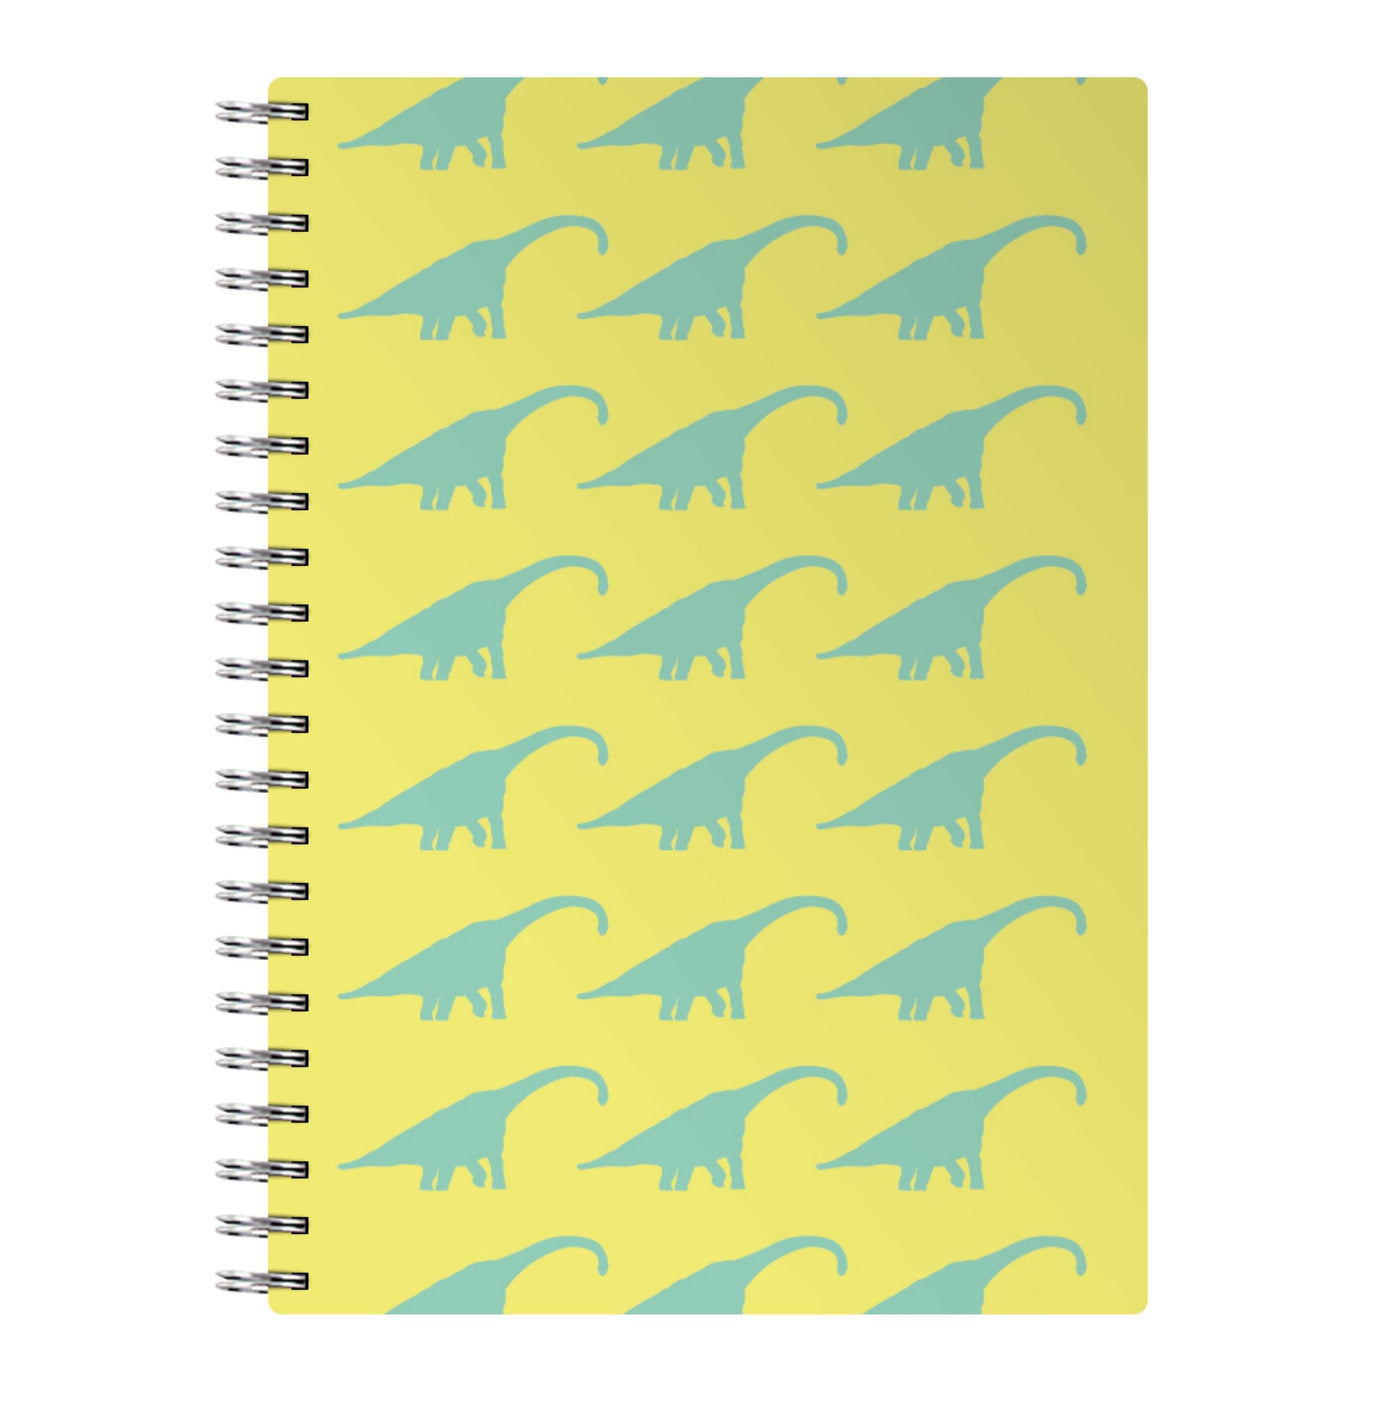 Dinosaur pattern - Jurassic Park Notebook